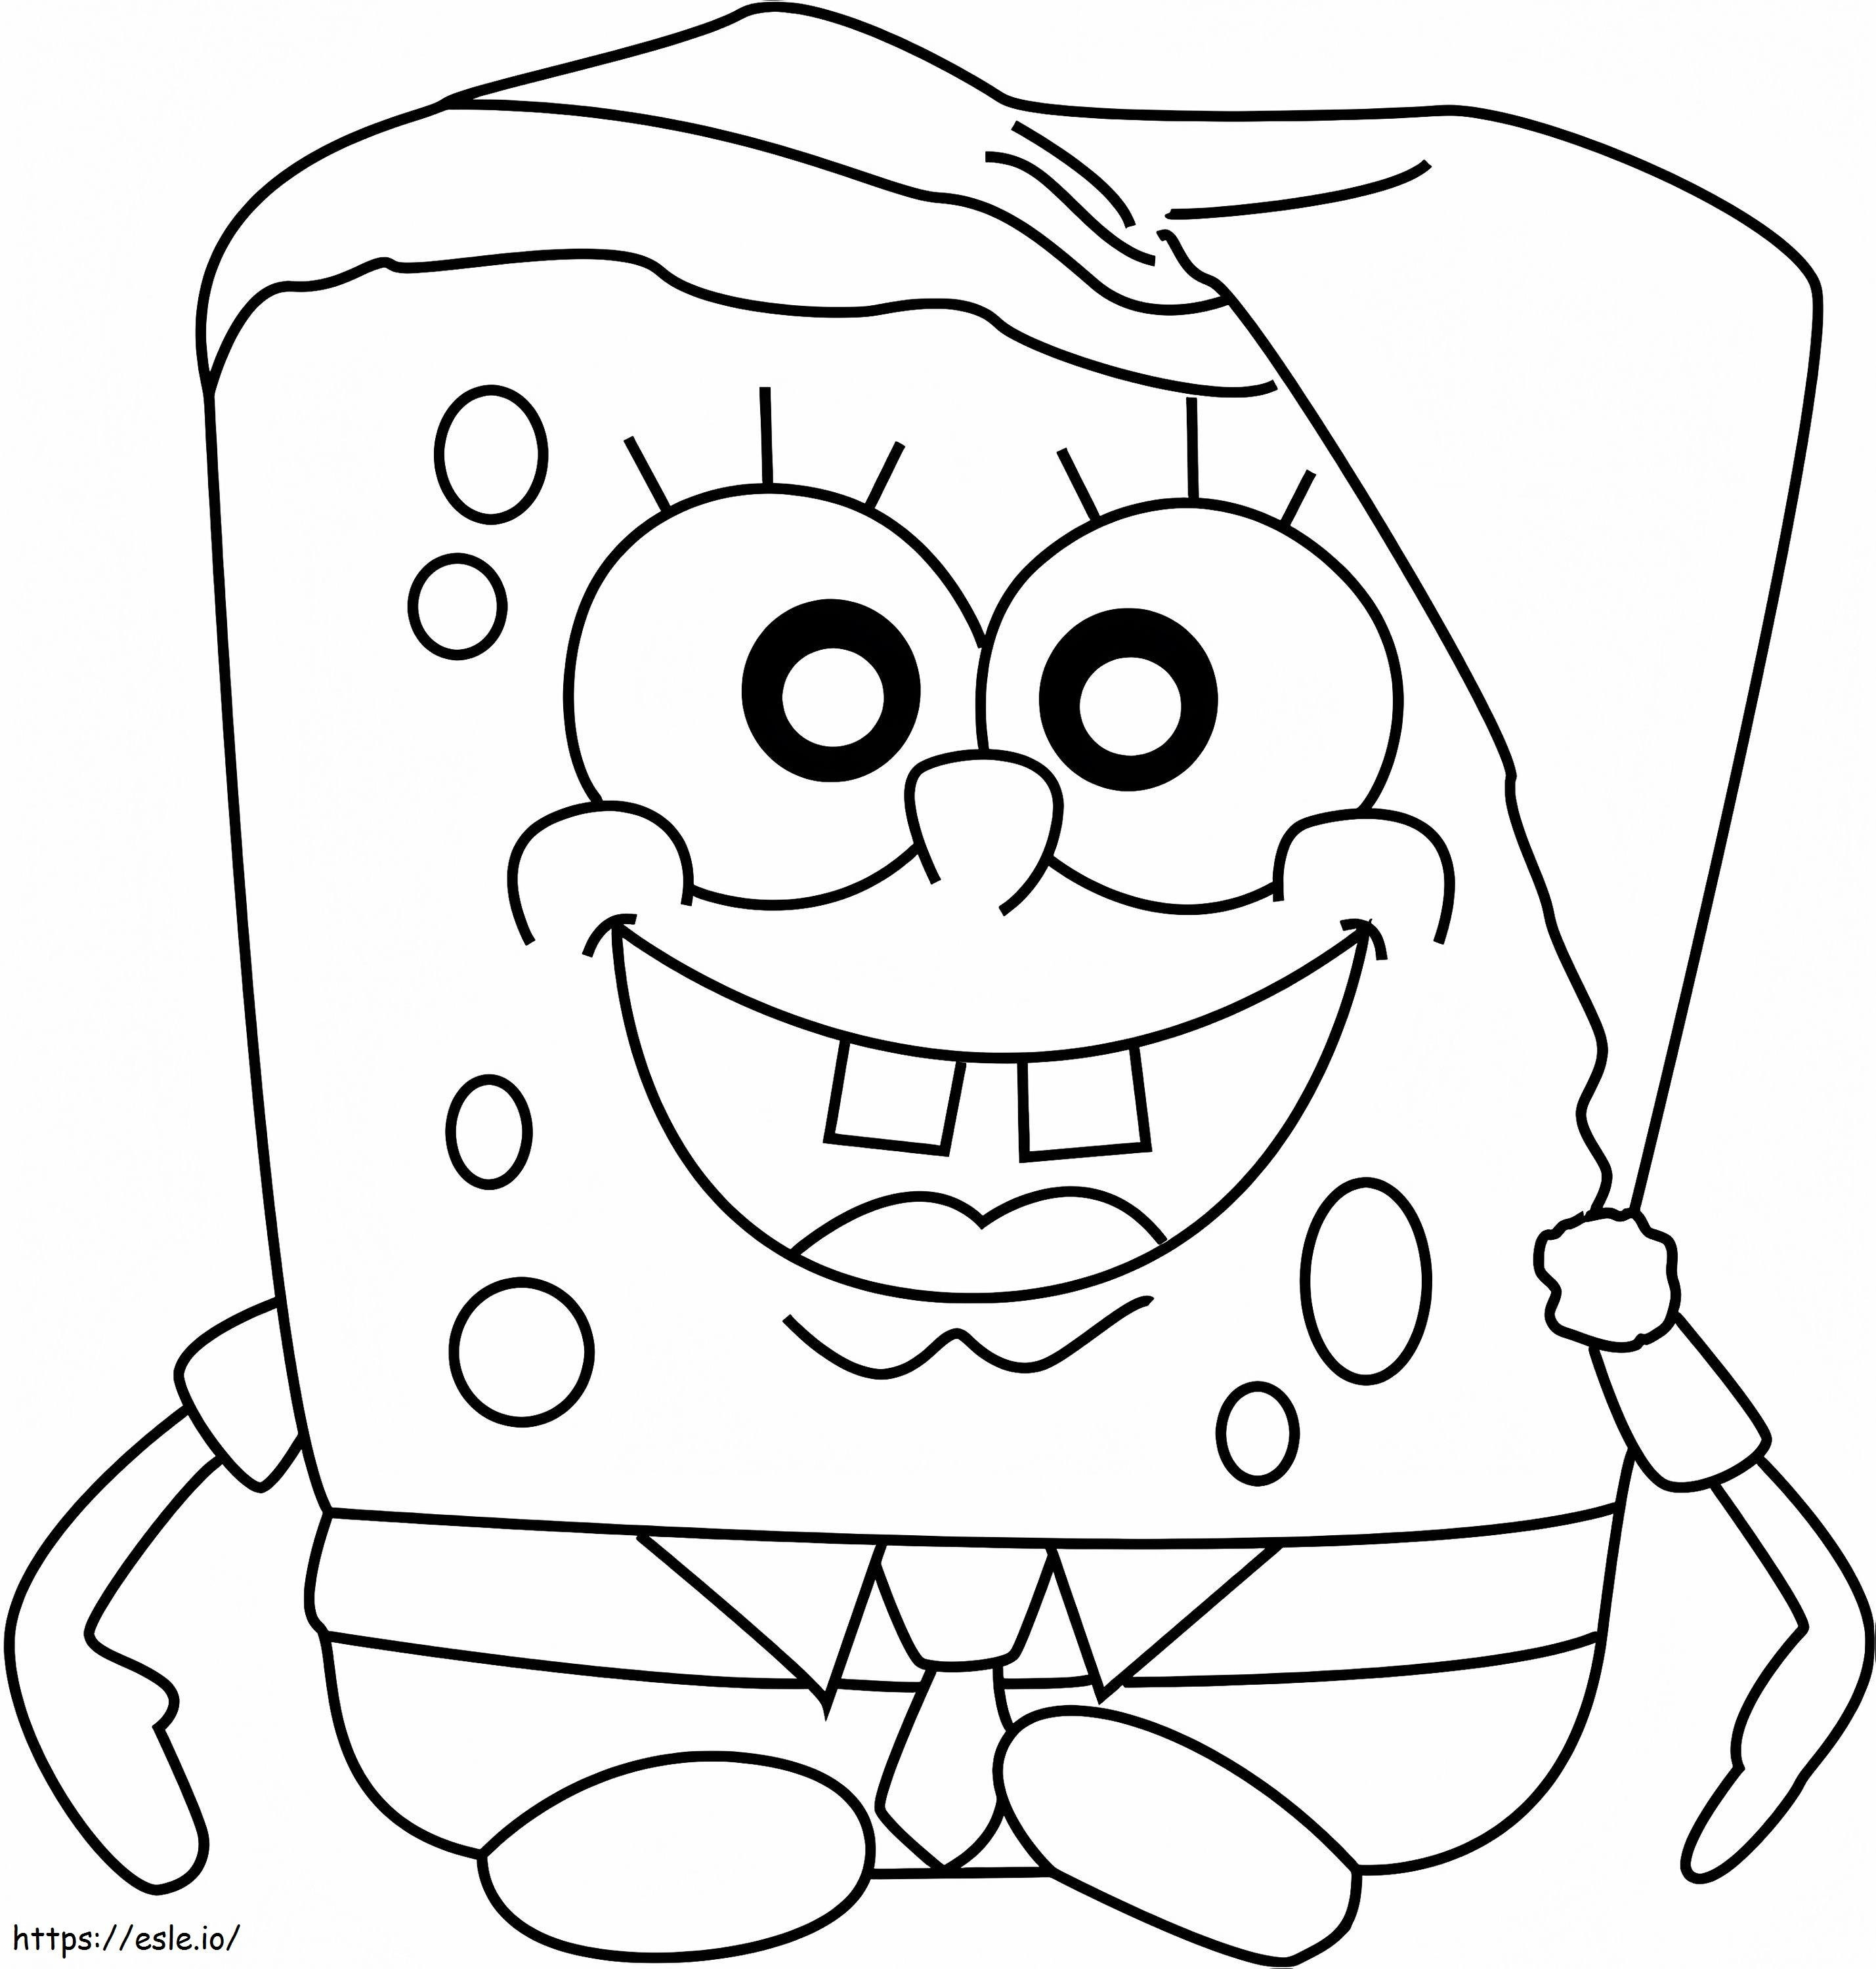  Spongebob Weihnachten1 ausmalbilder